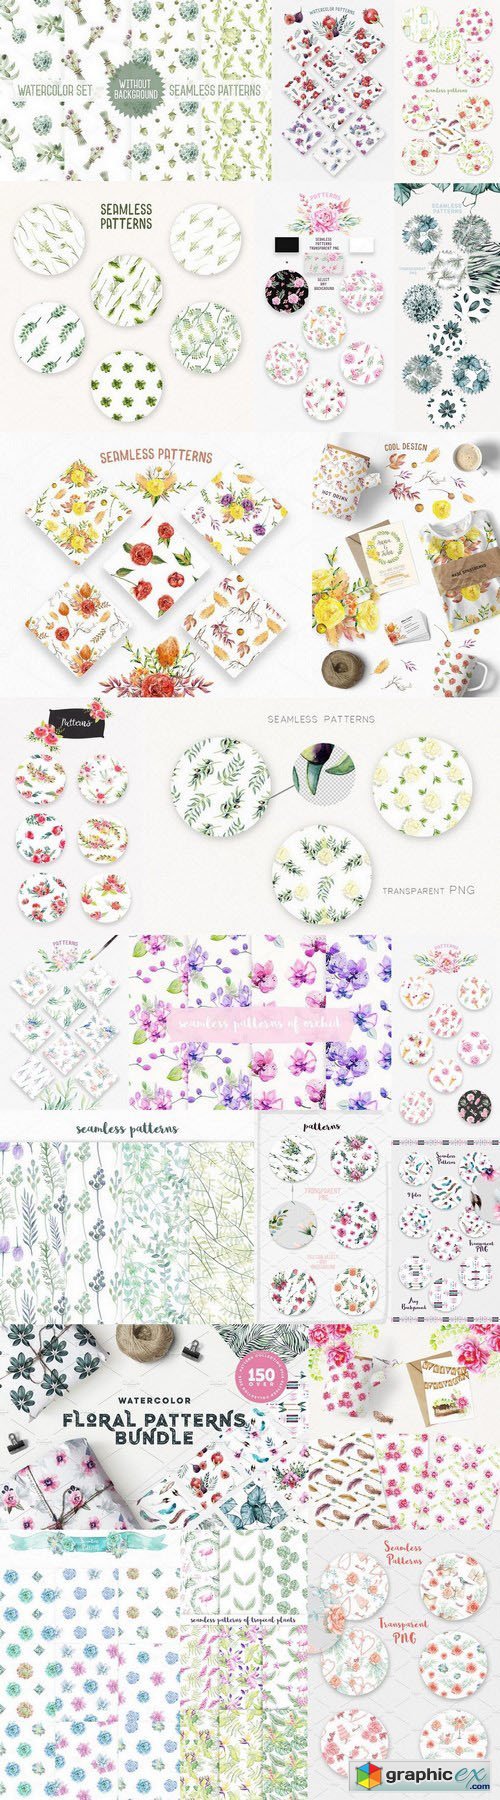 Floral Patterns Bundle 90% OFF